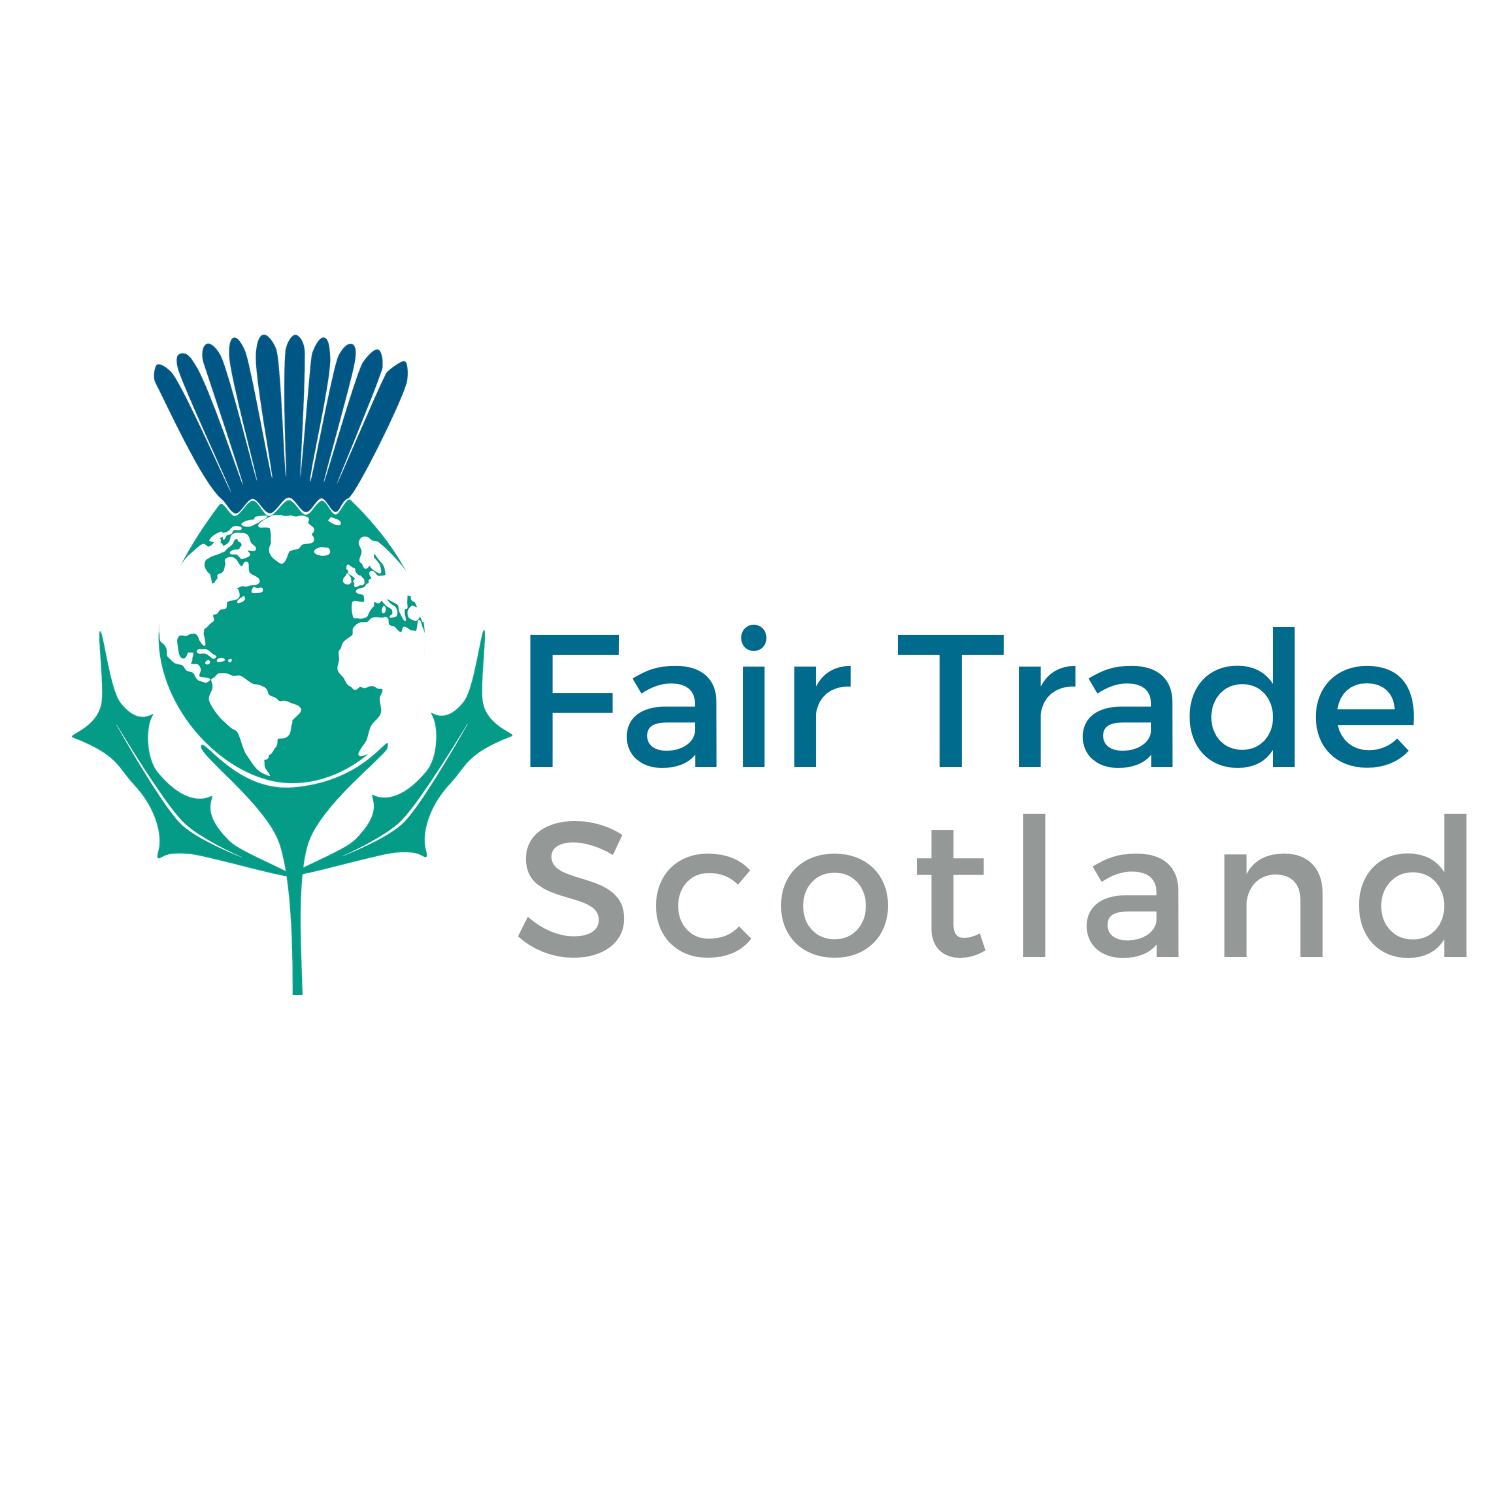 Fair Trade Scotland